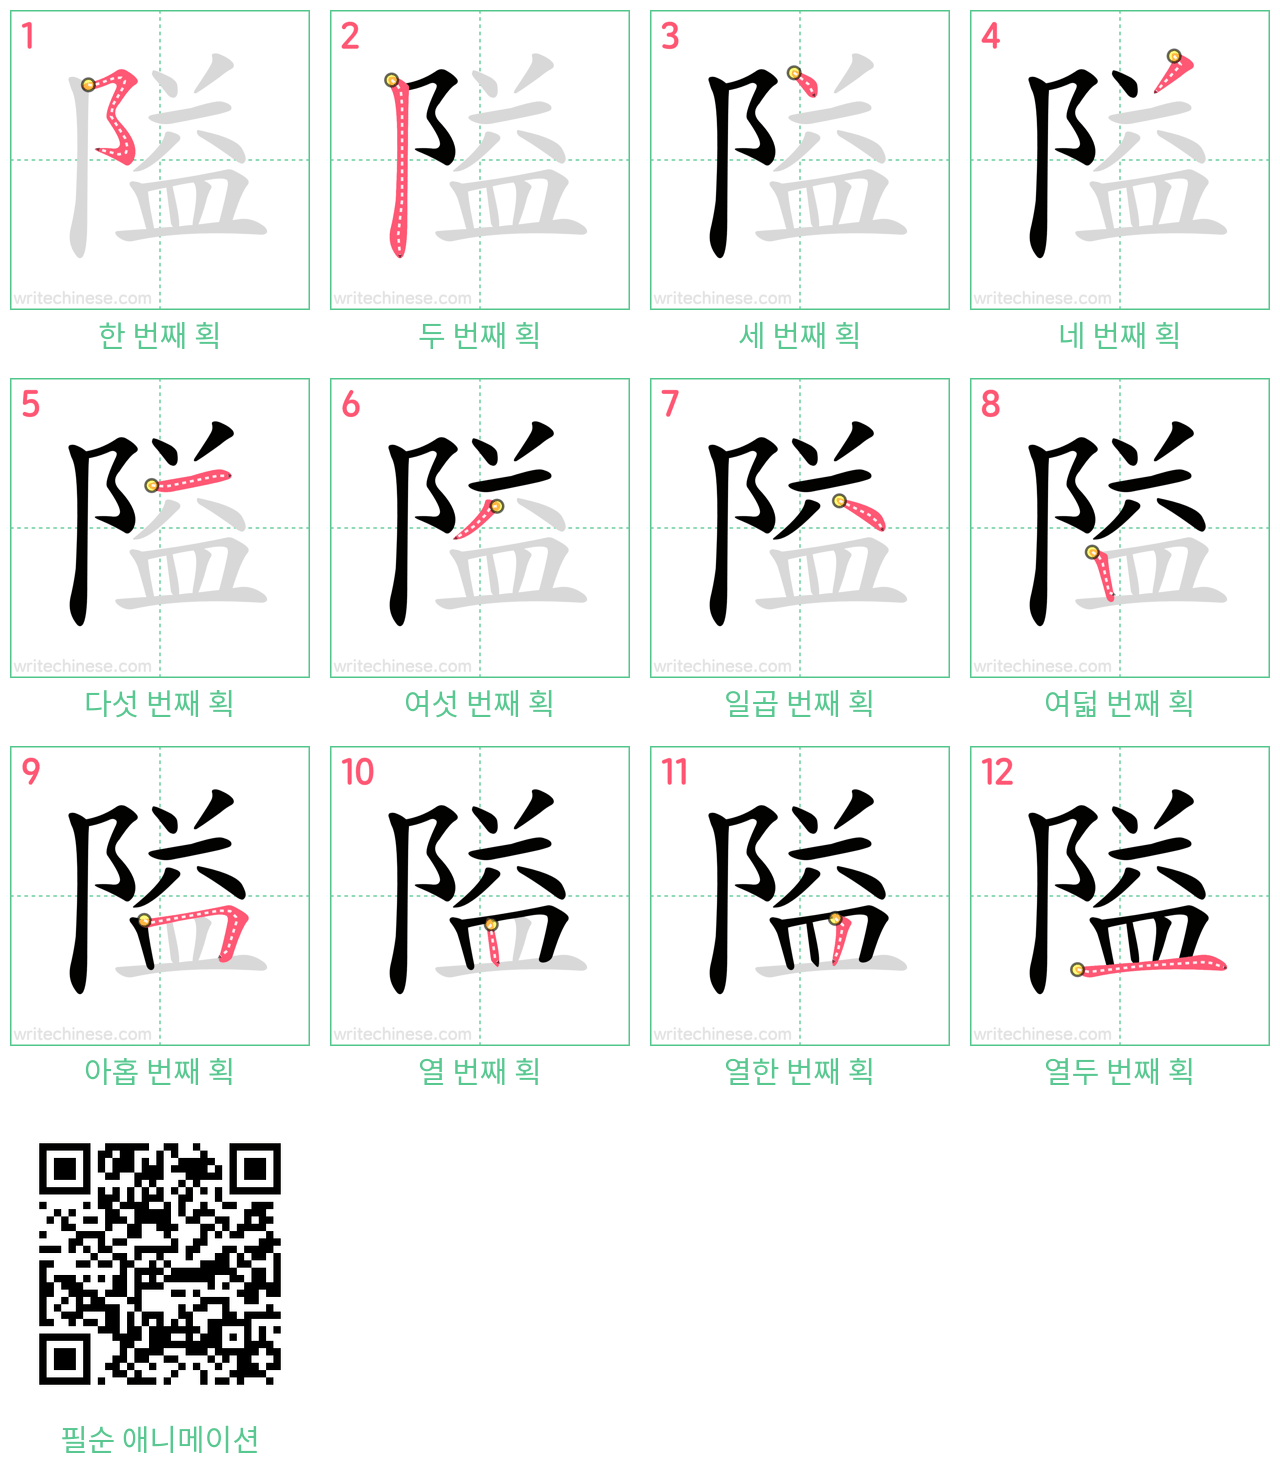 隘 step-by-step stroke order diagrams